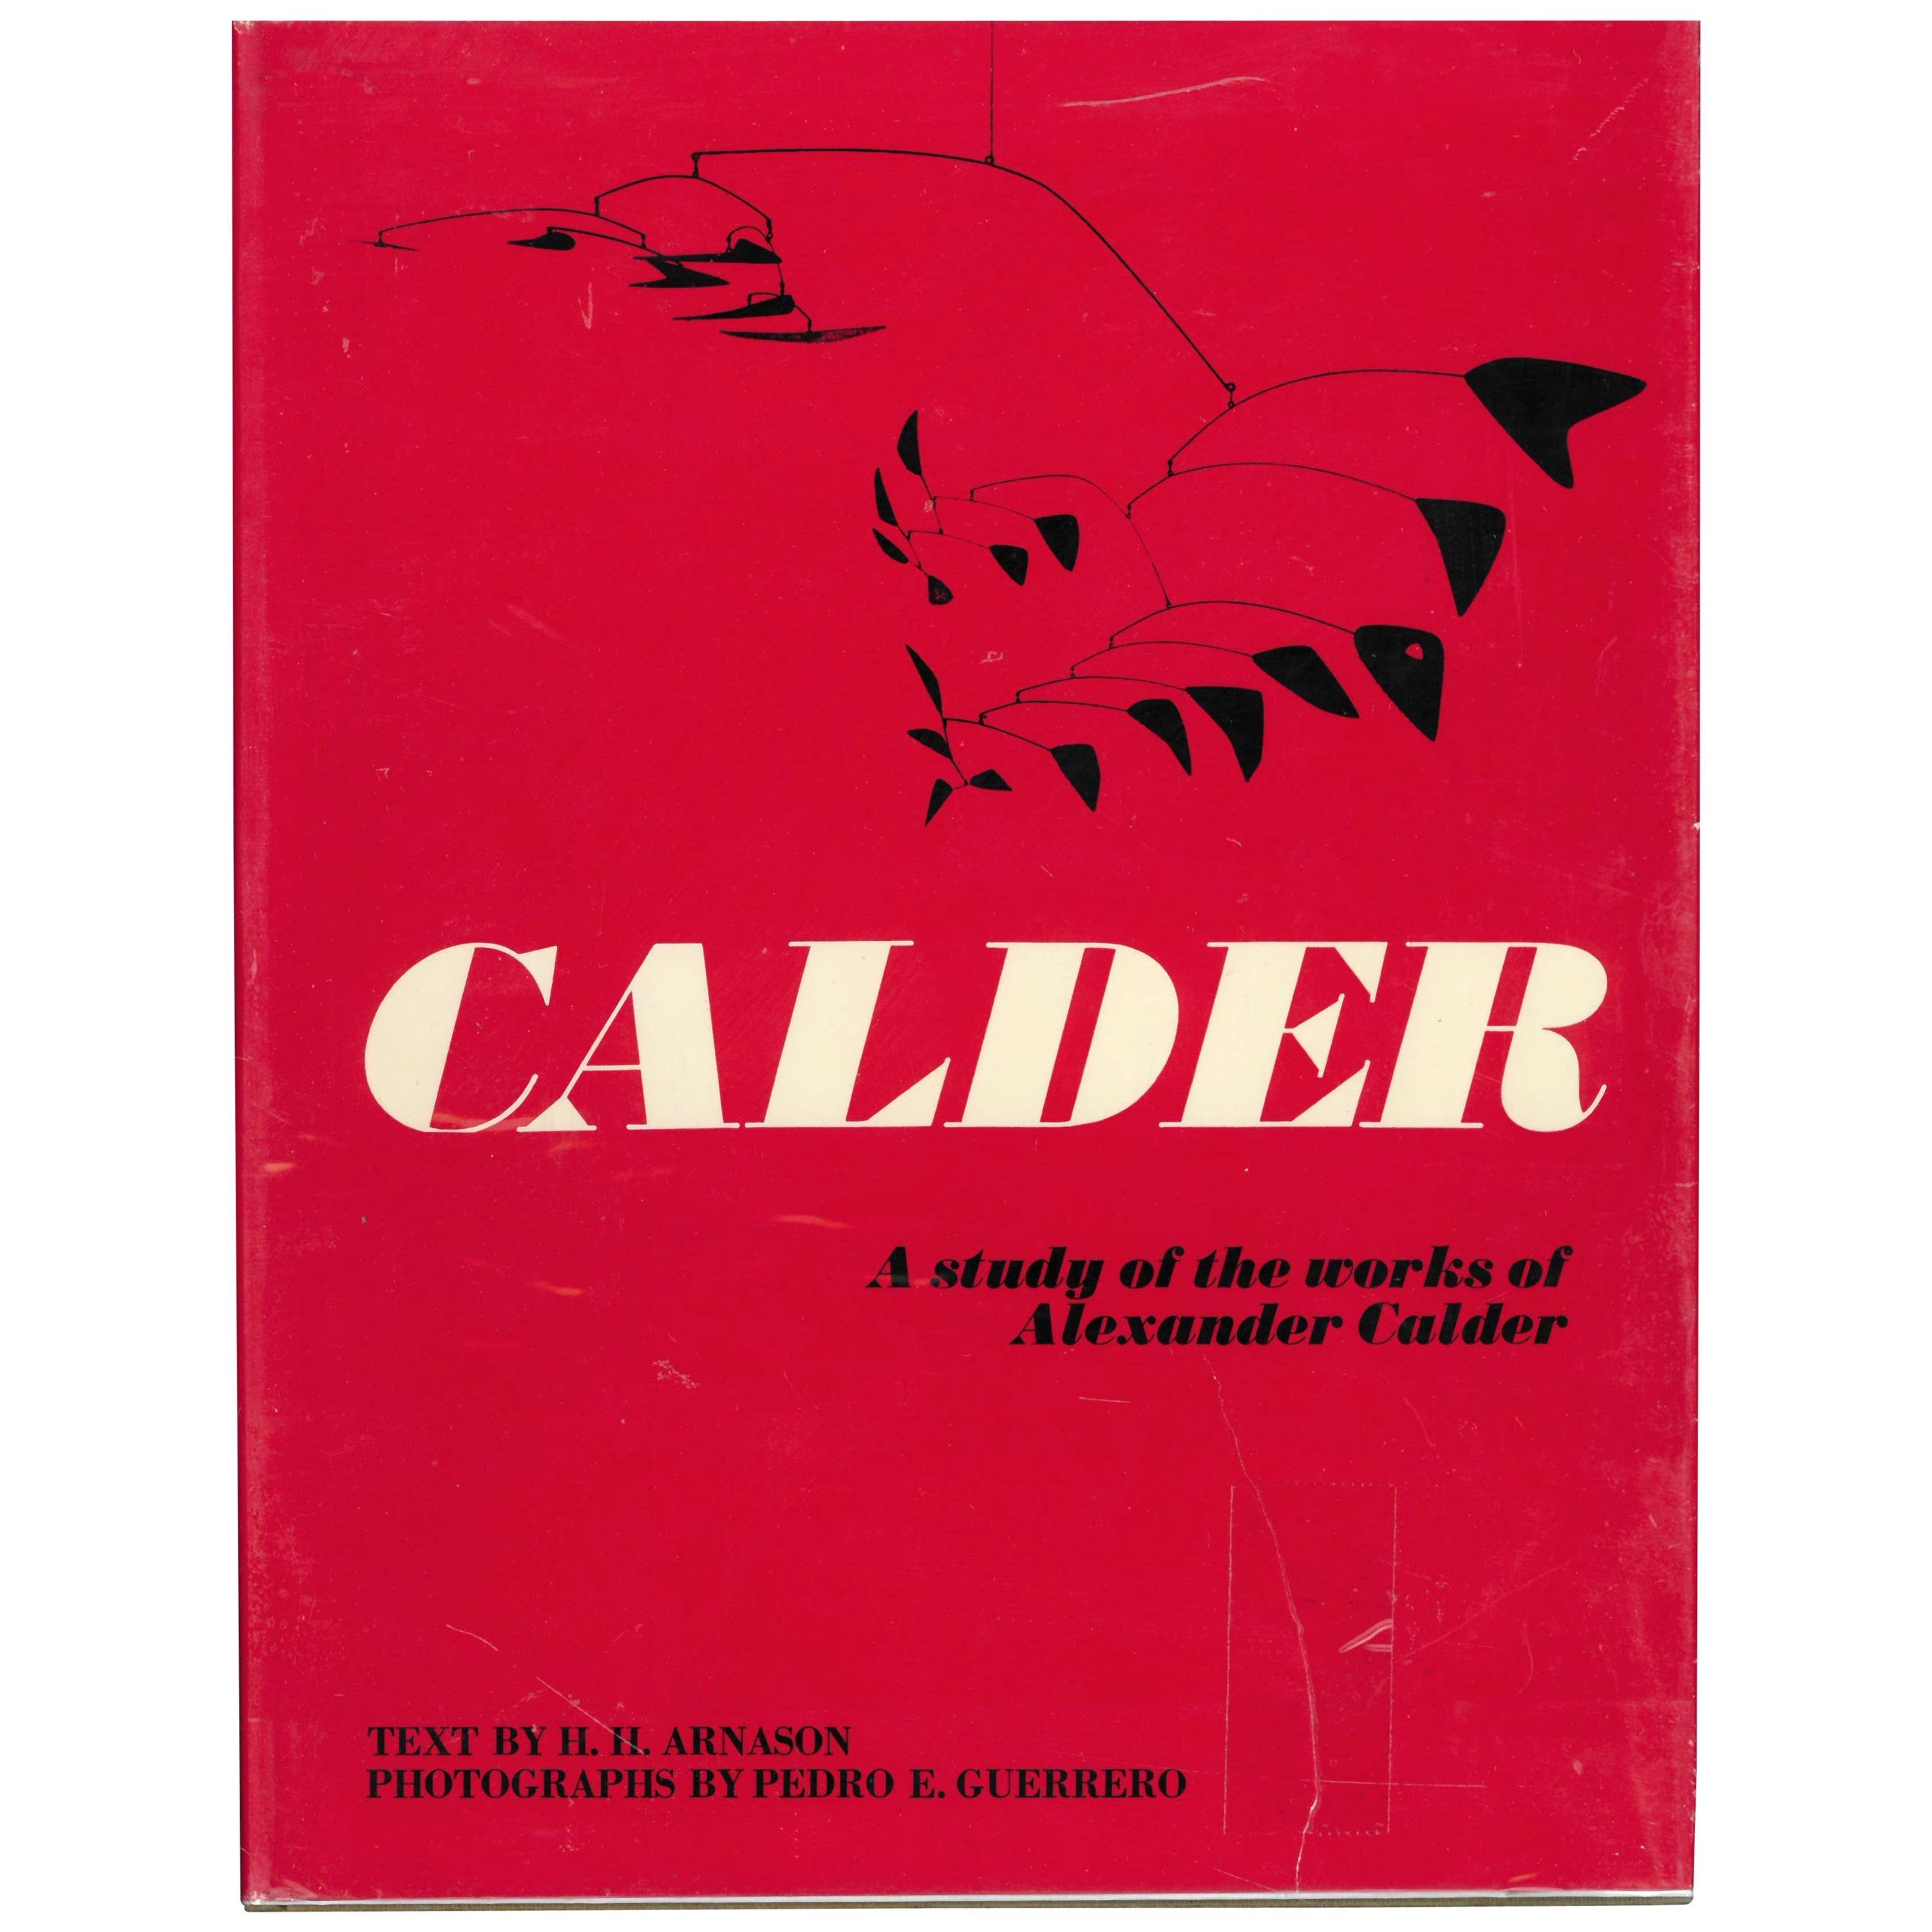 Calder, a Study of the Works of Alexander Calder